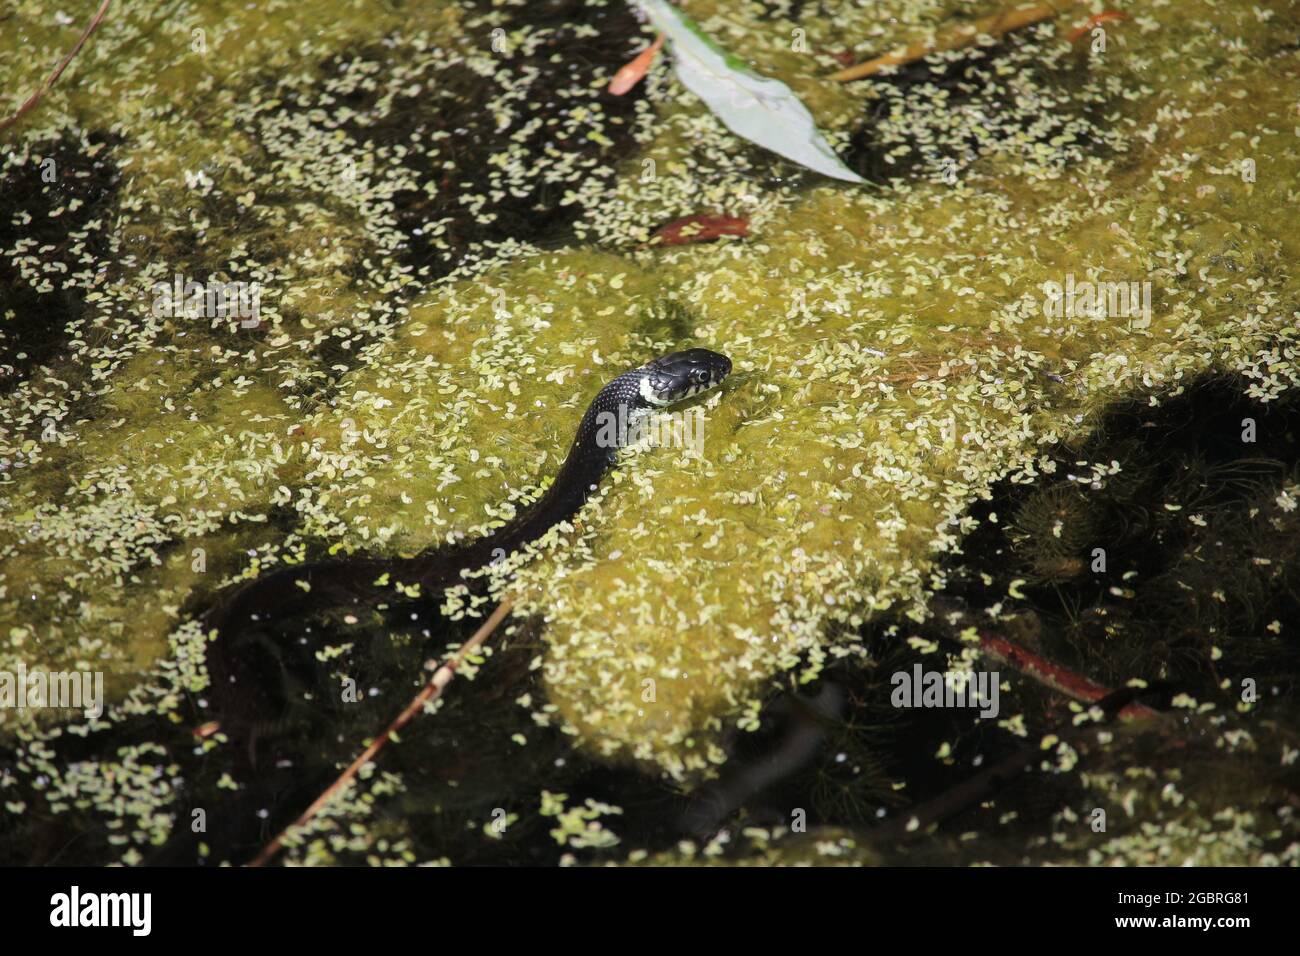 Hierba Snake, Natrix natrix, la caza en la superficie de un estanque cerca de Münster, Alemania Foto de stock